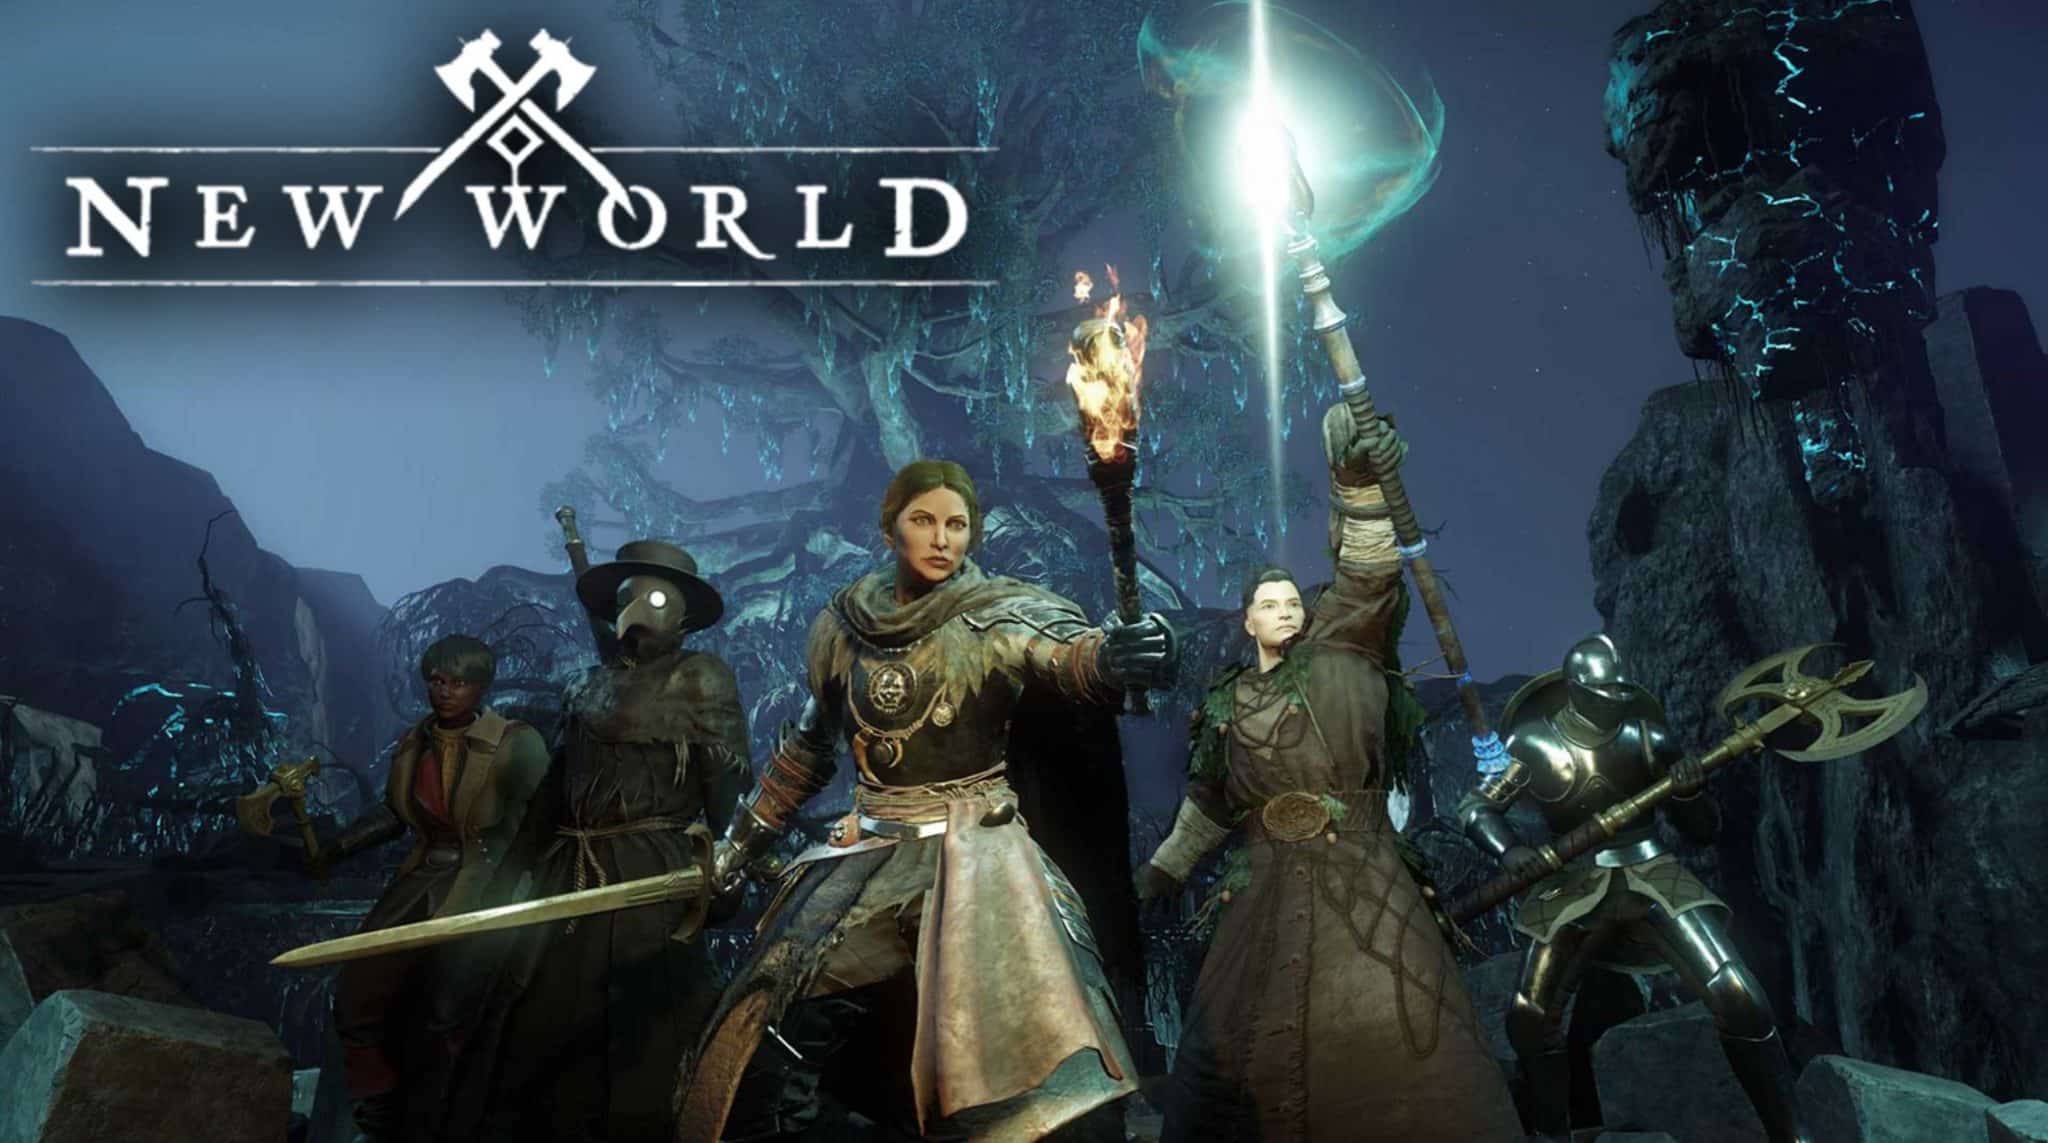 New World gameplay